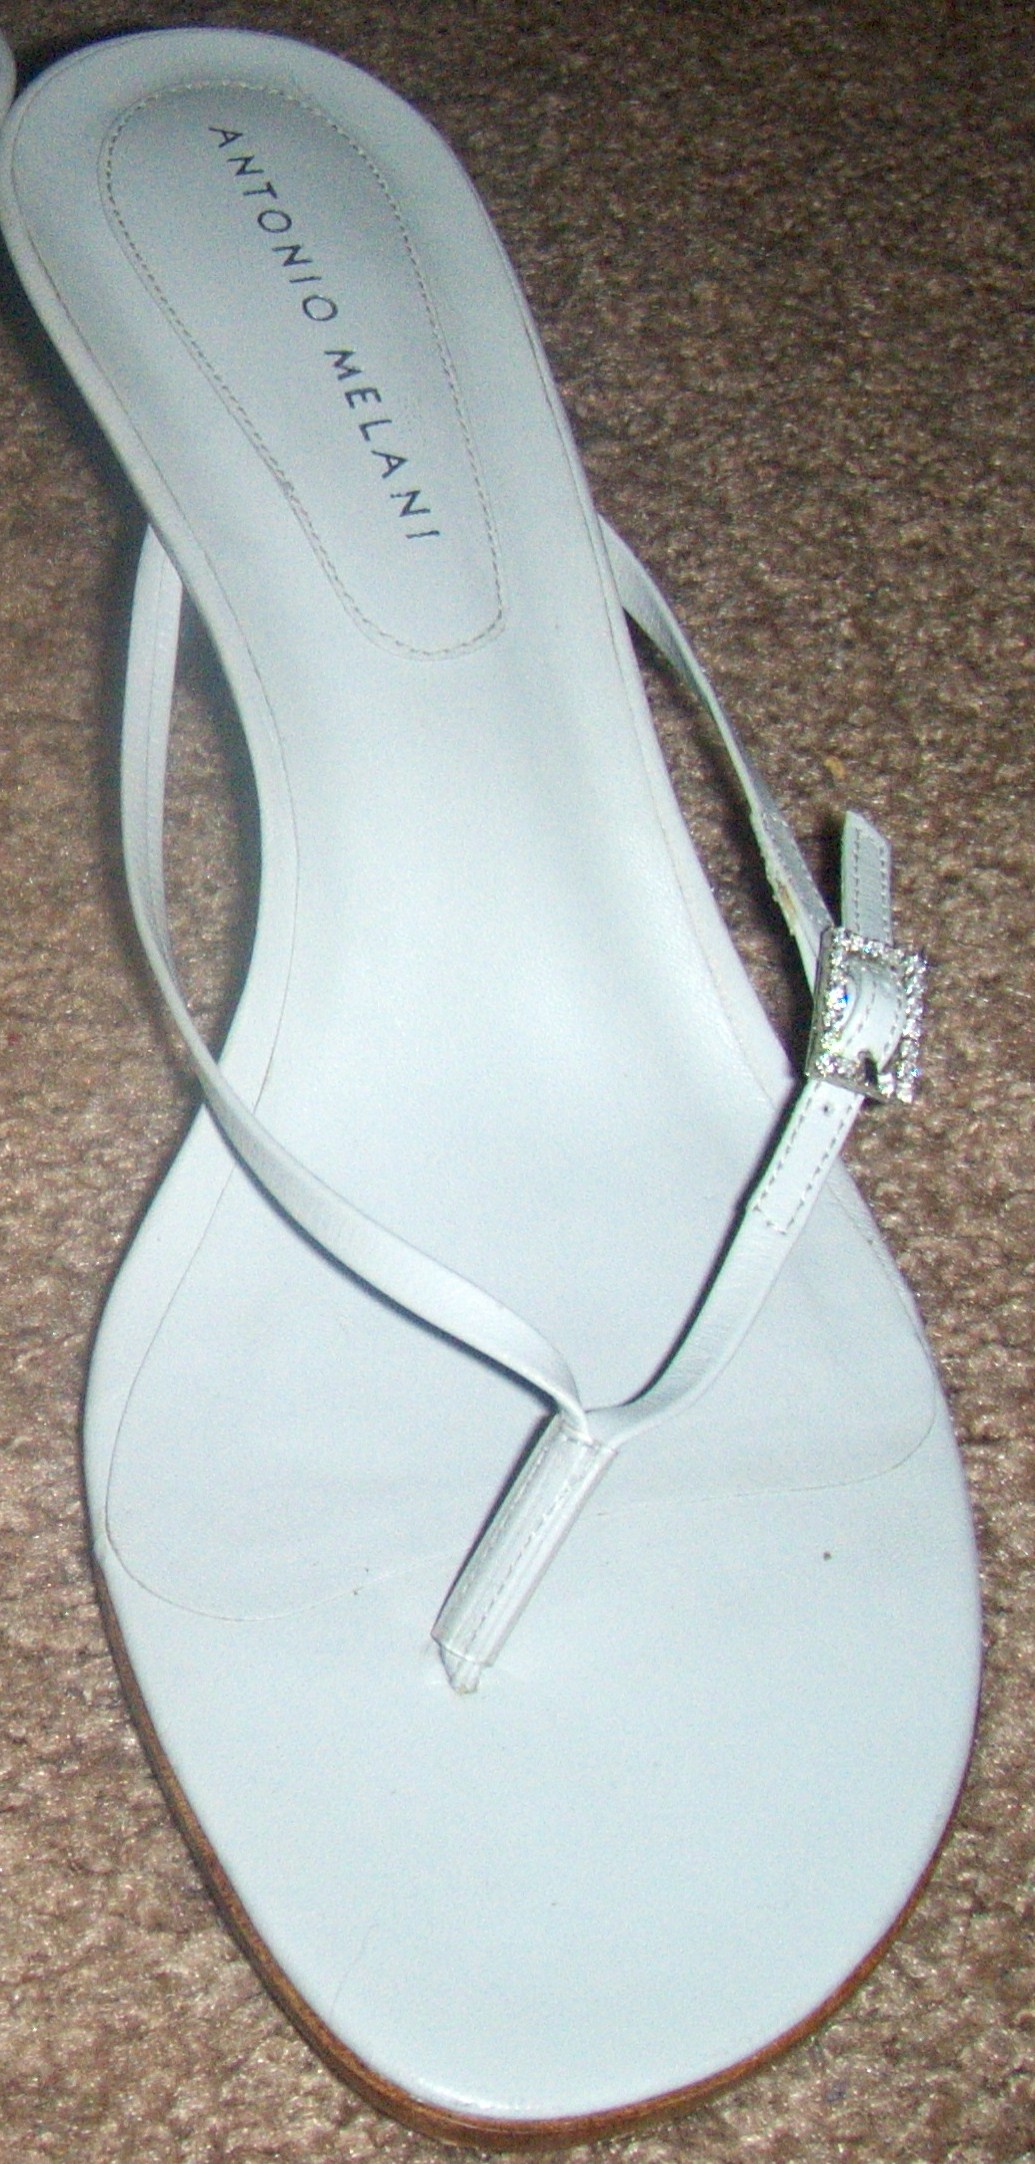 White Sandal